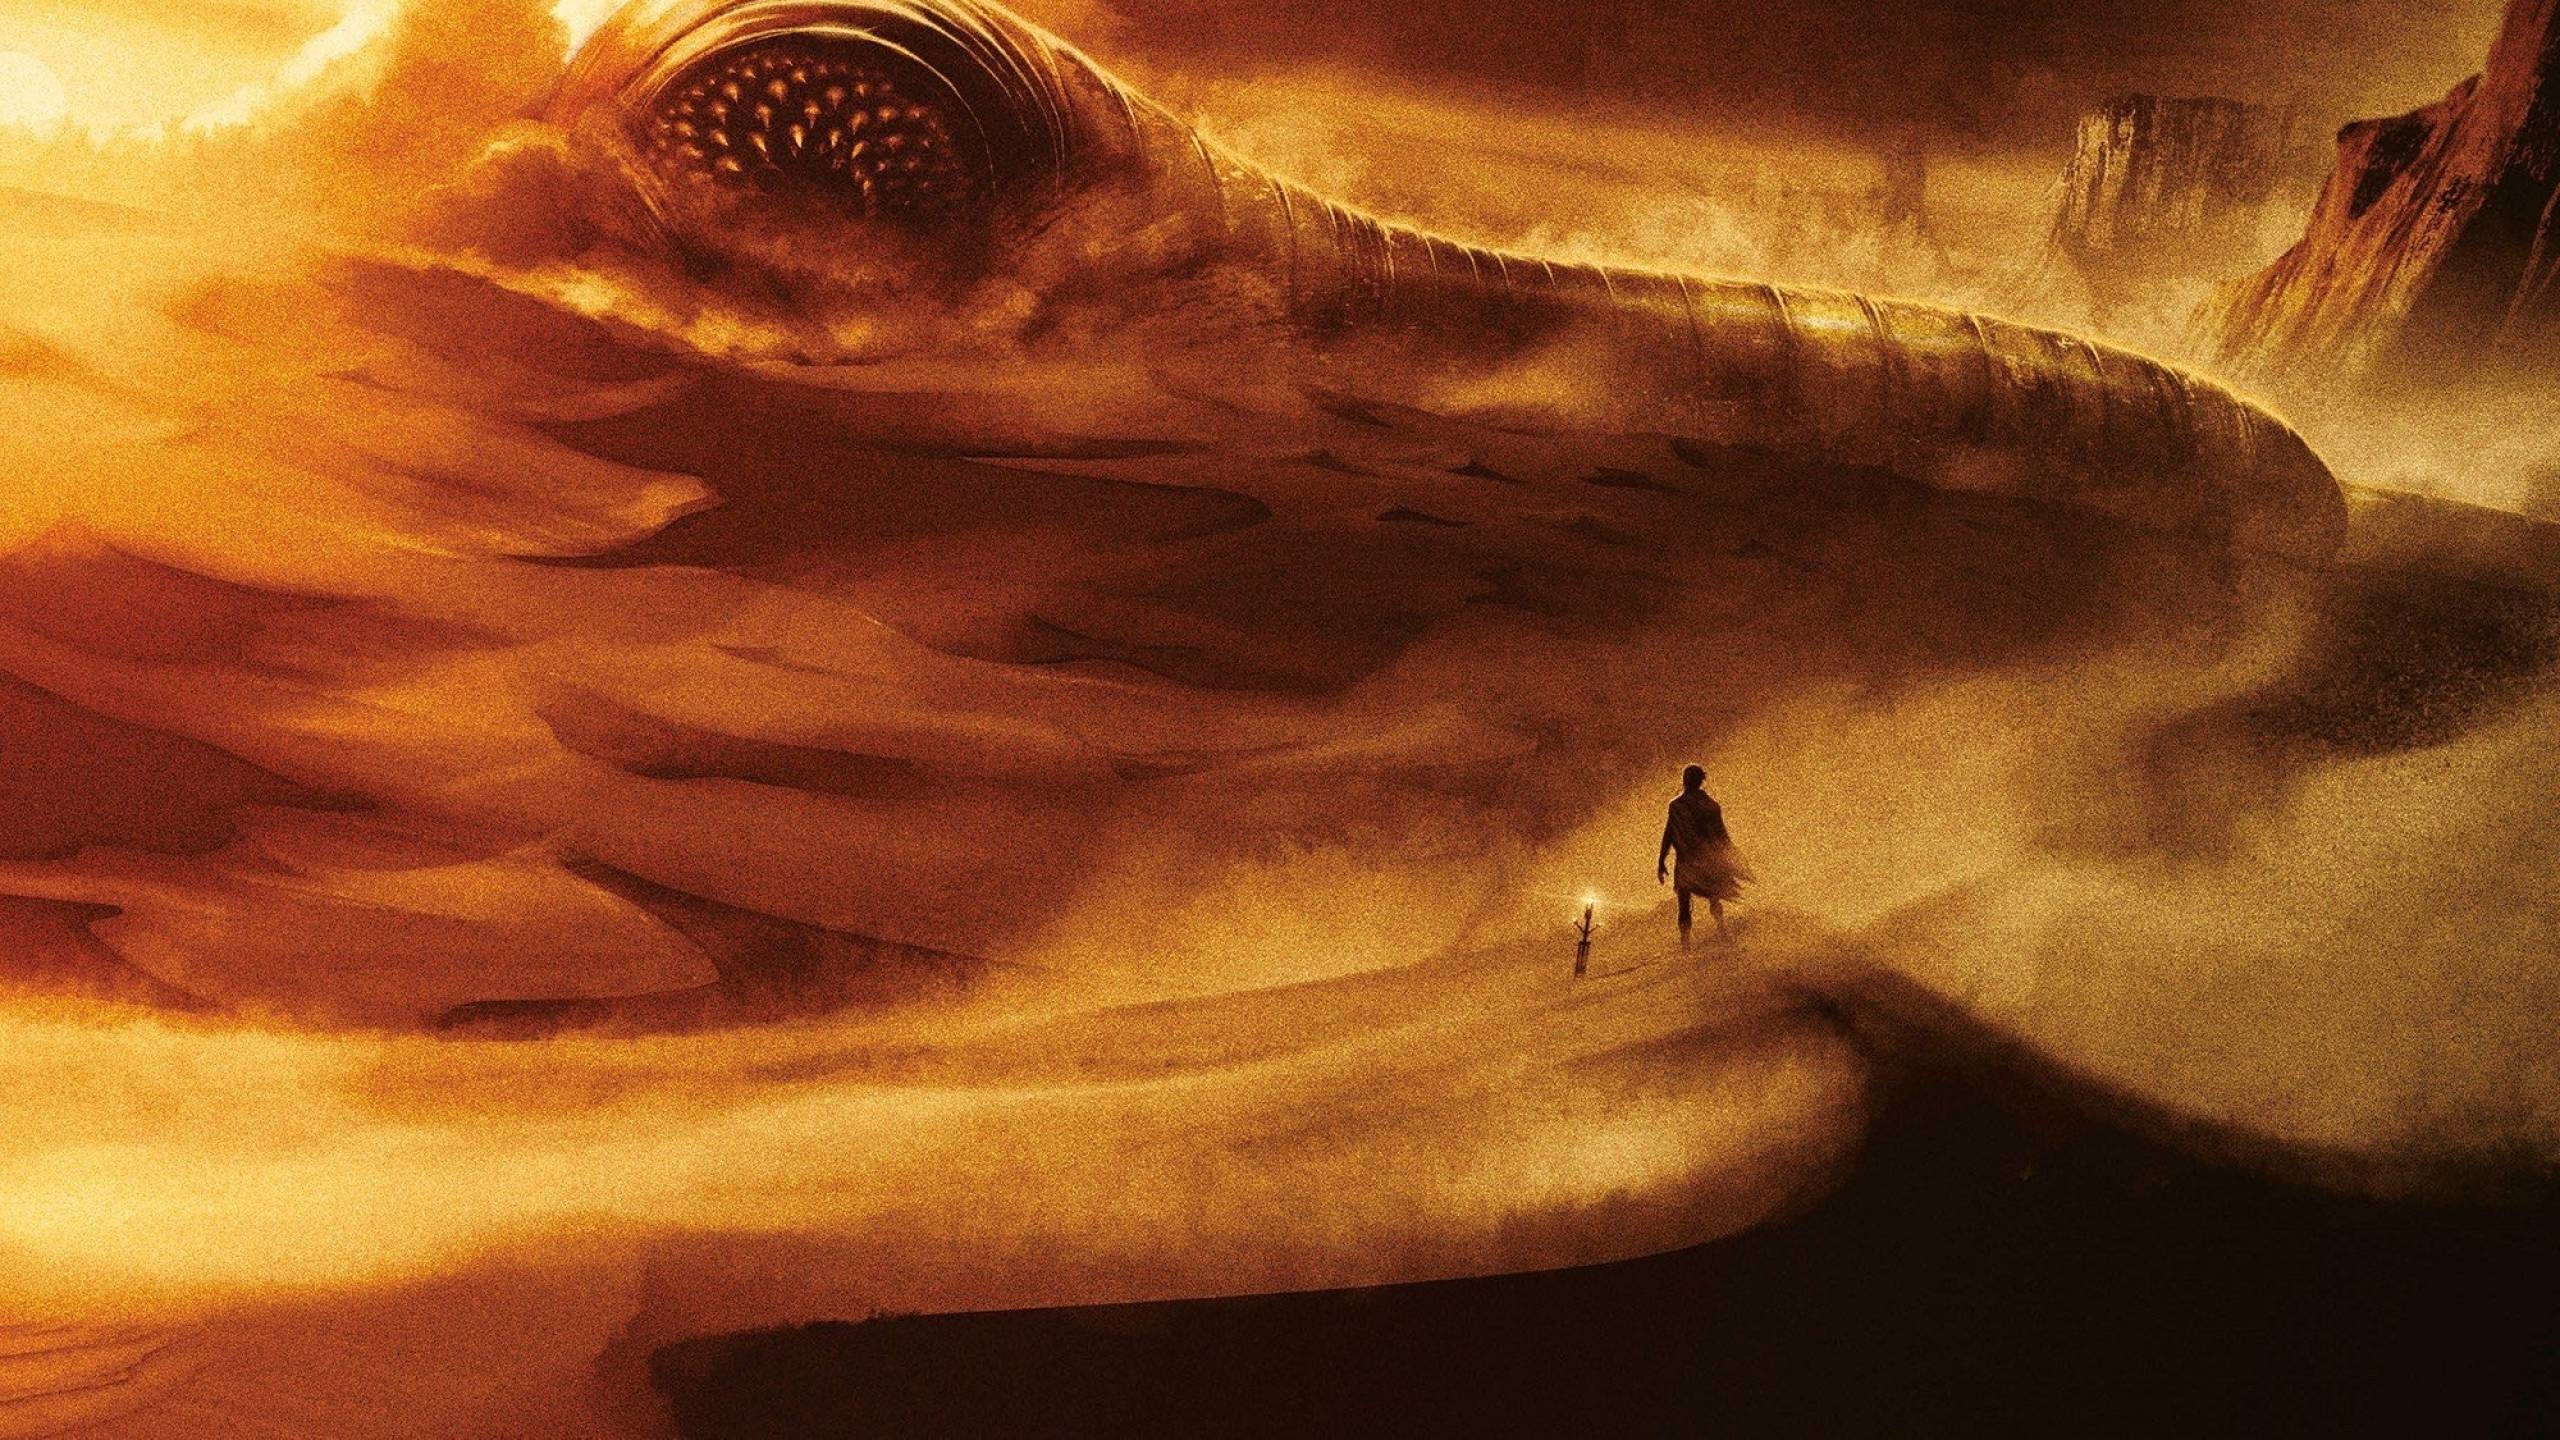 Dune Worm, Sand creature, Alien landscape, Dune wallpapers, 2560x1440 HD Desktop